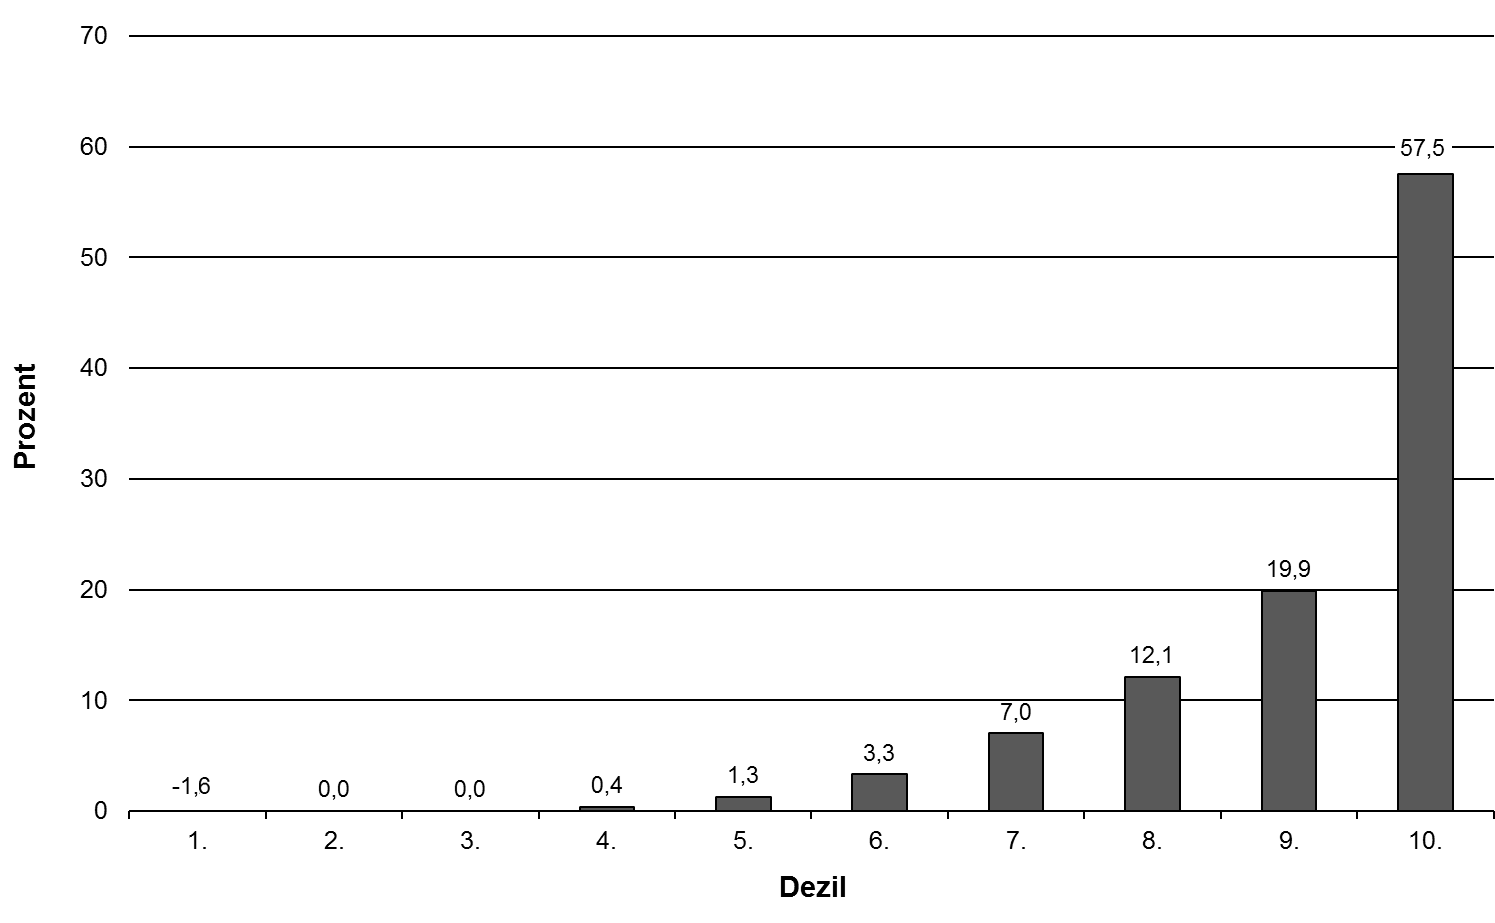 Abbildung 3: Verteilung des Nettovermögens privater Haushalte, Datenquelle: SOEP 2012 (eigene Darstellung)